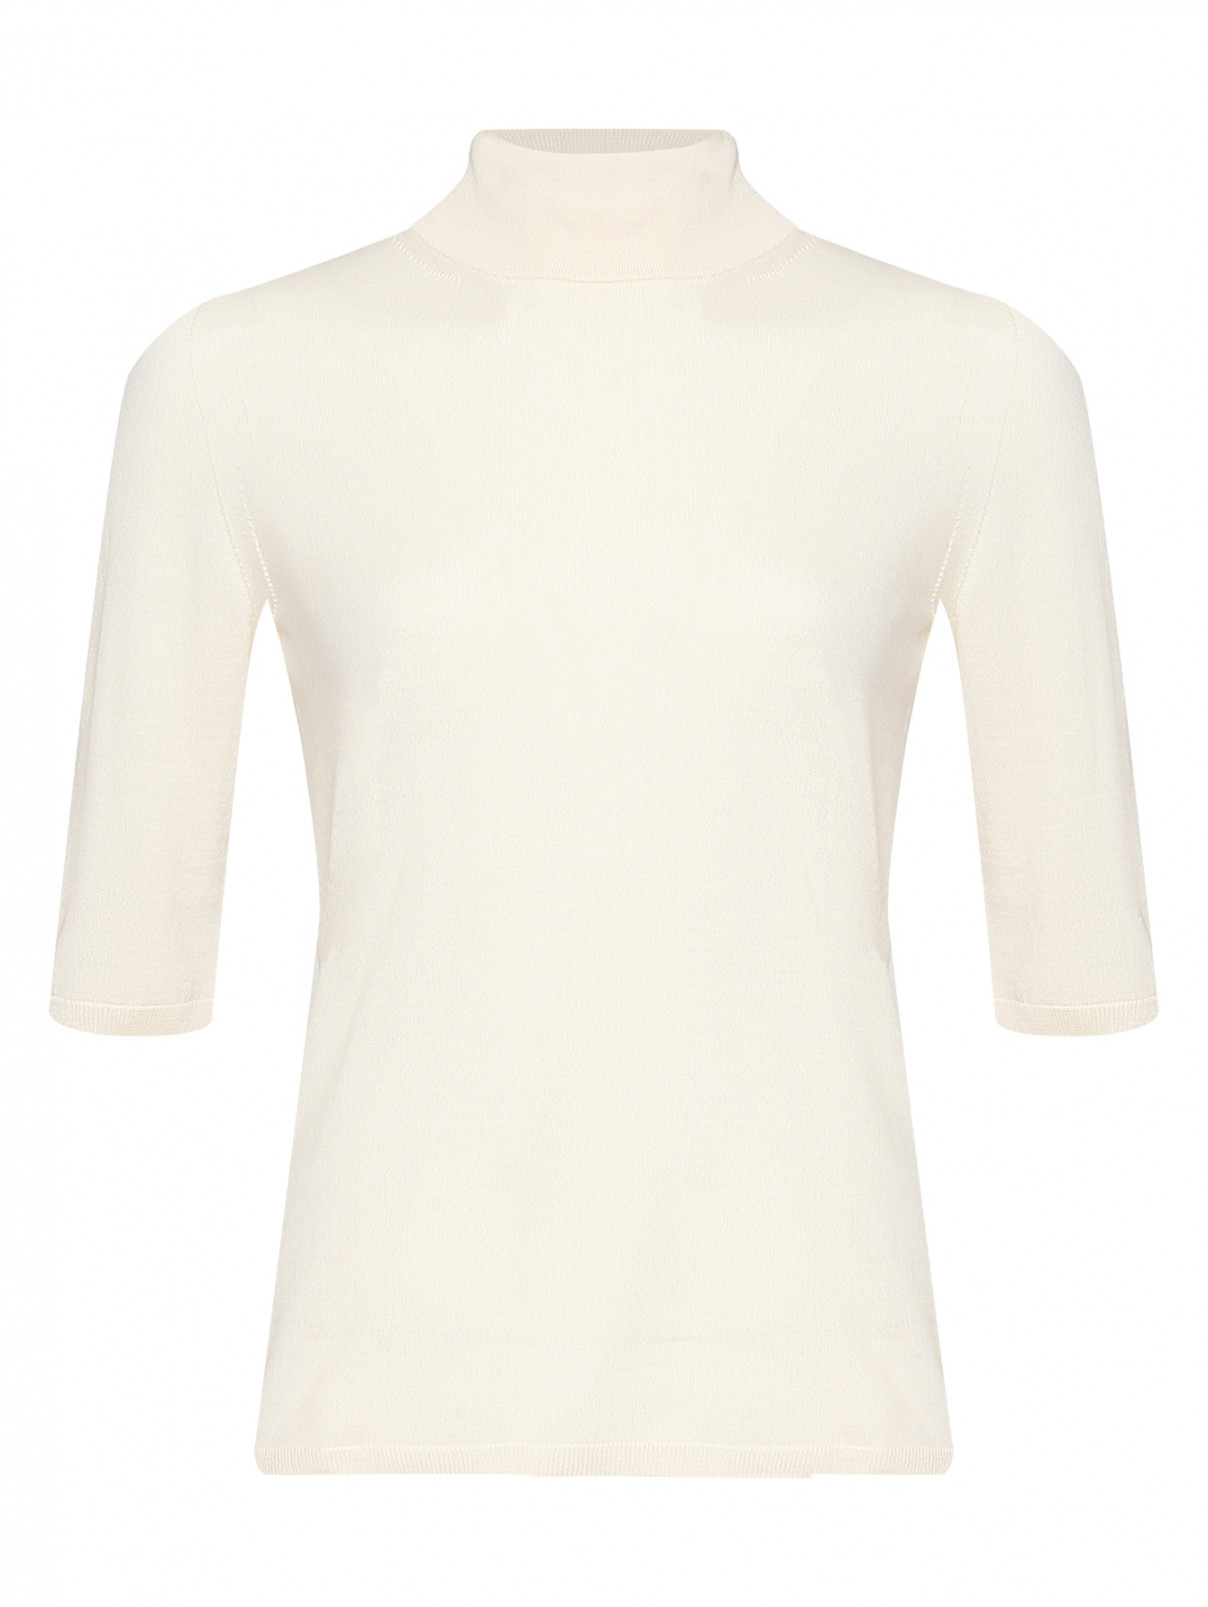 Джемпер из шерсти с короткими рукавами Max Mara  –  Общий вид  – Цвет:  Белый